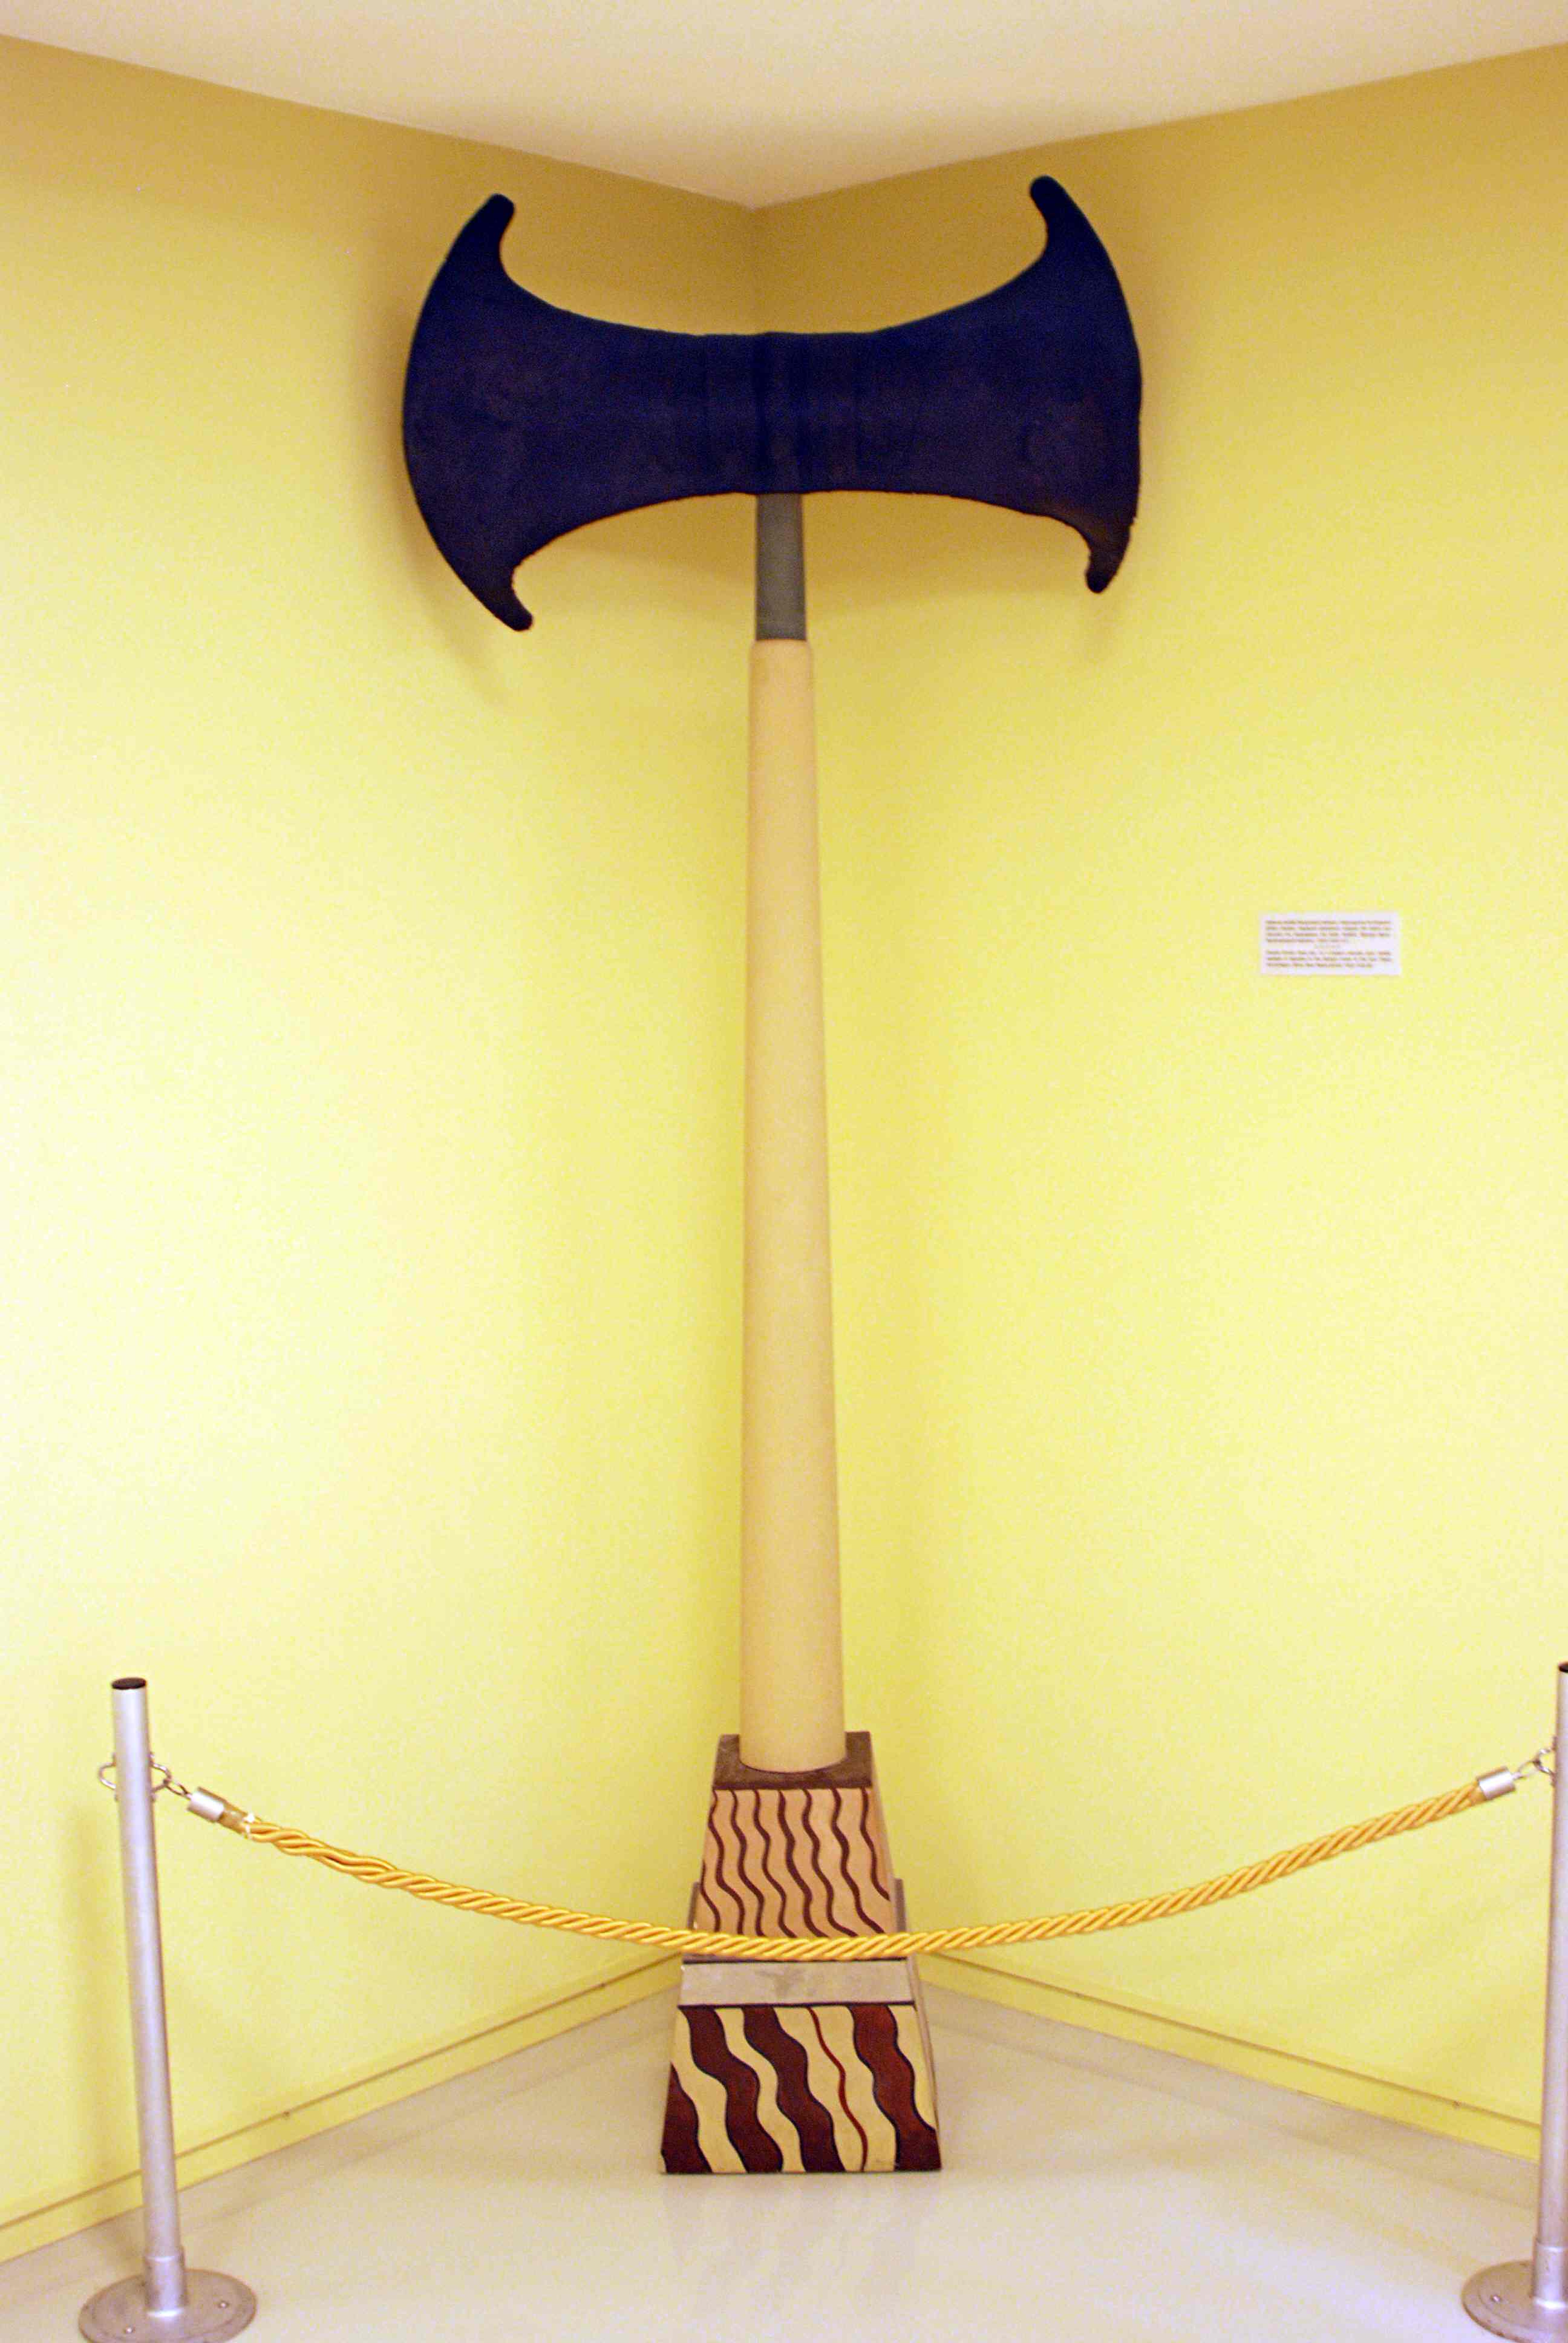 巨大的古米诺斯斧头——它们有什么用？ 1个